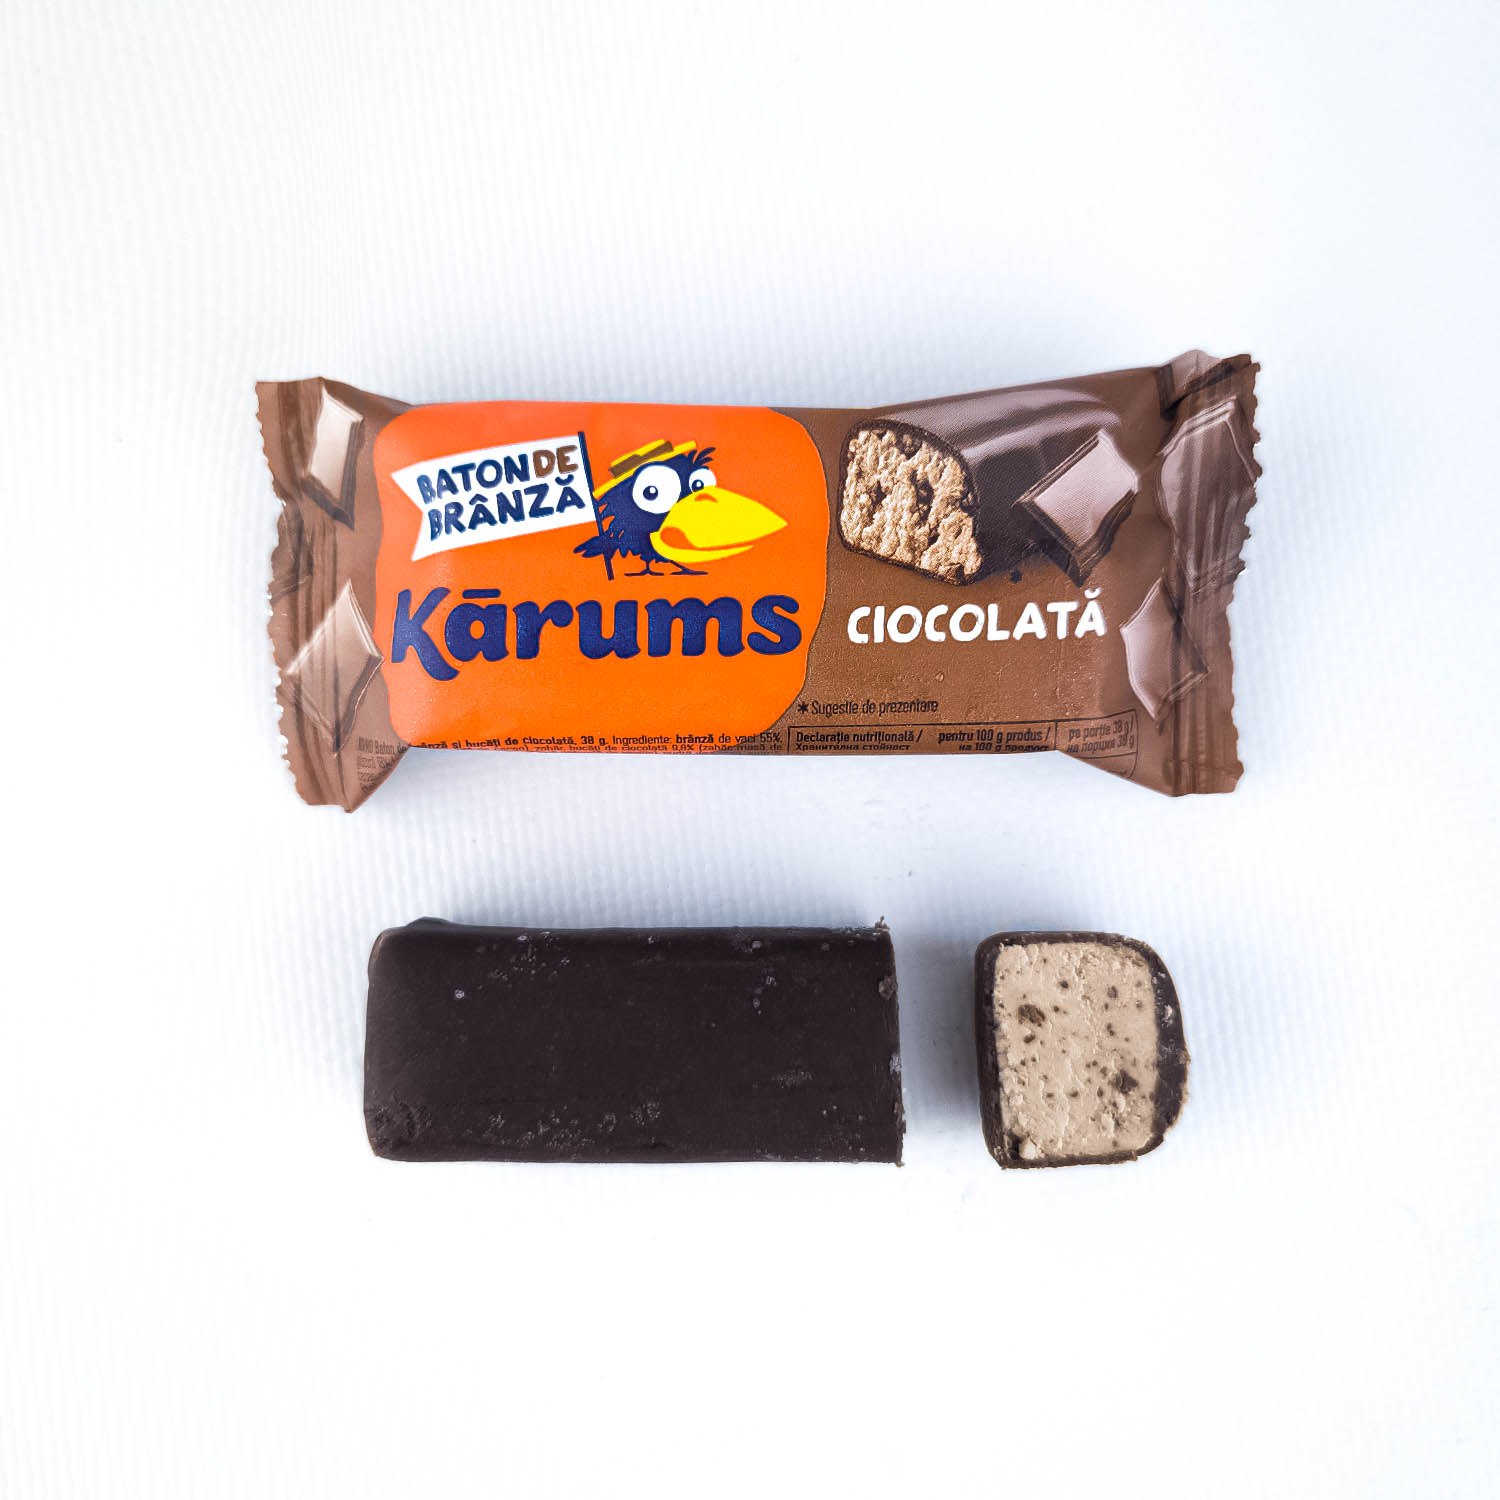 Baton de brânză și bucăți de ciocolată Karums